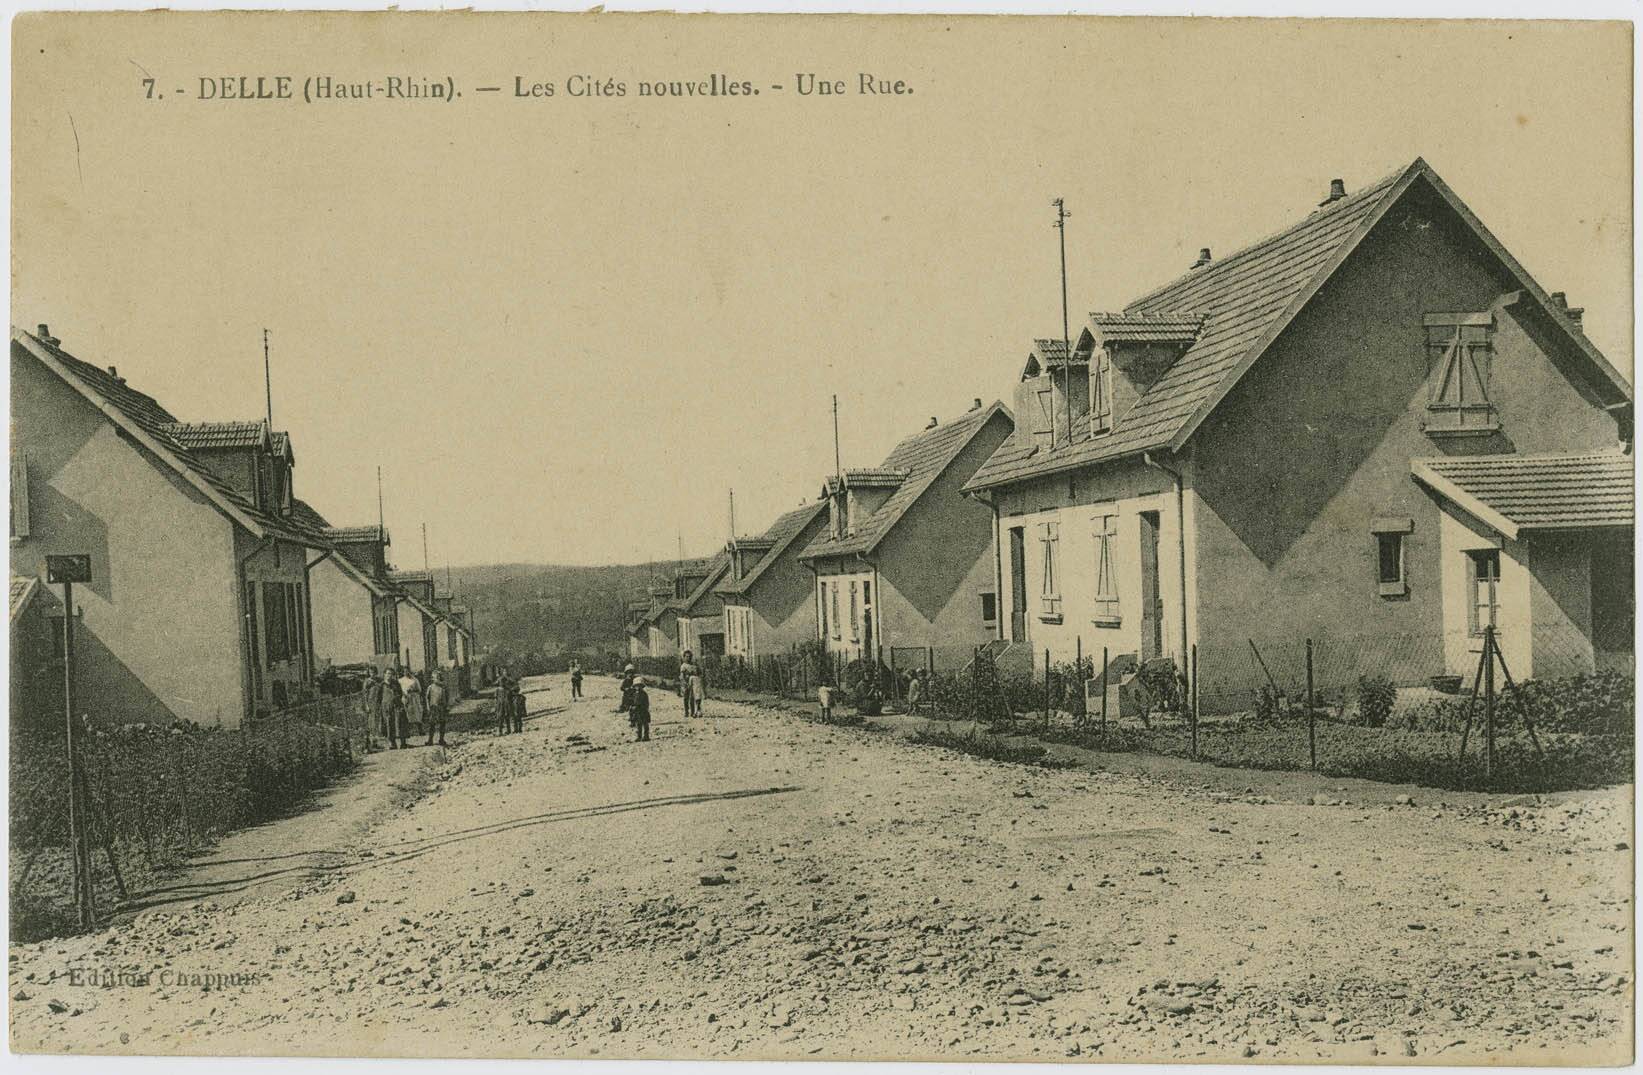 Delle (Haut-Rhin), les cités nouvelles, une rue.